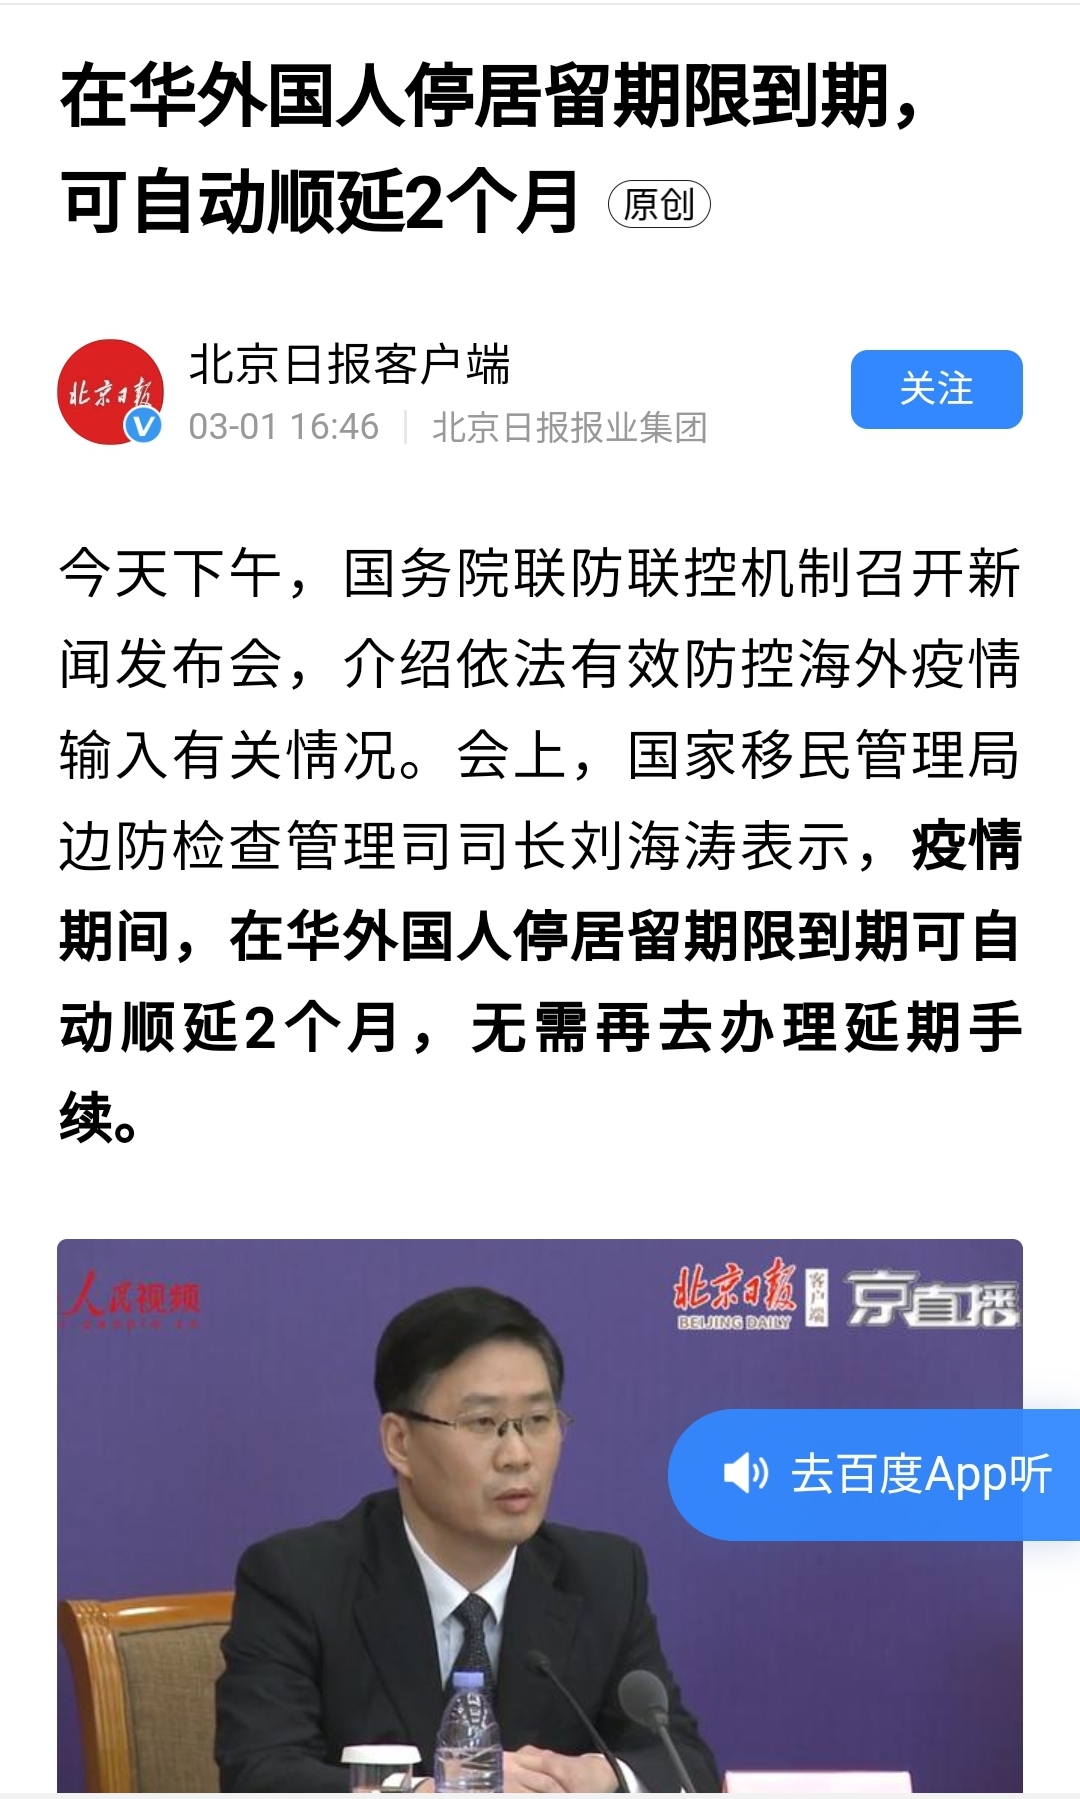 중국 국가이민관리국은 기자회견을 갖고 외국인 거류기간이 2개월 자동연장되며, 따로 연장수속을 할 필요가 없다고 발표했다